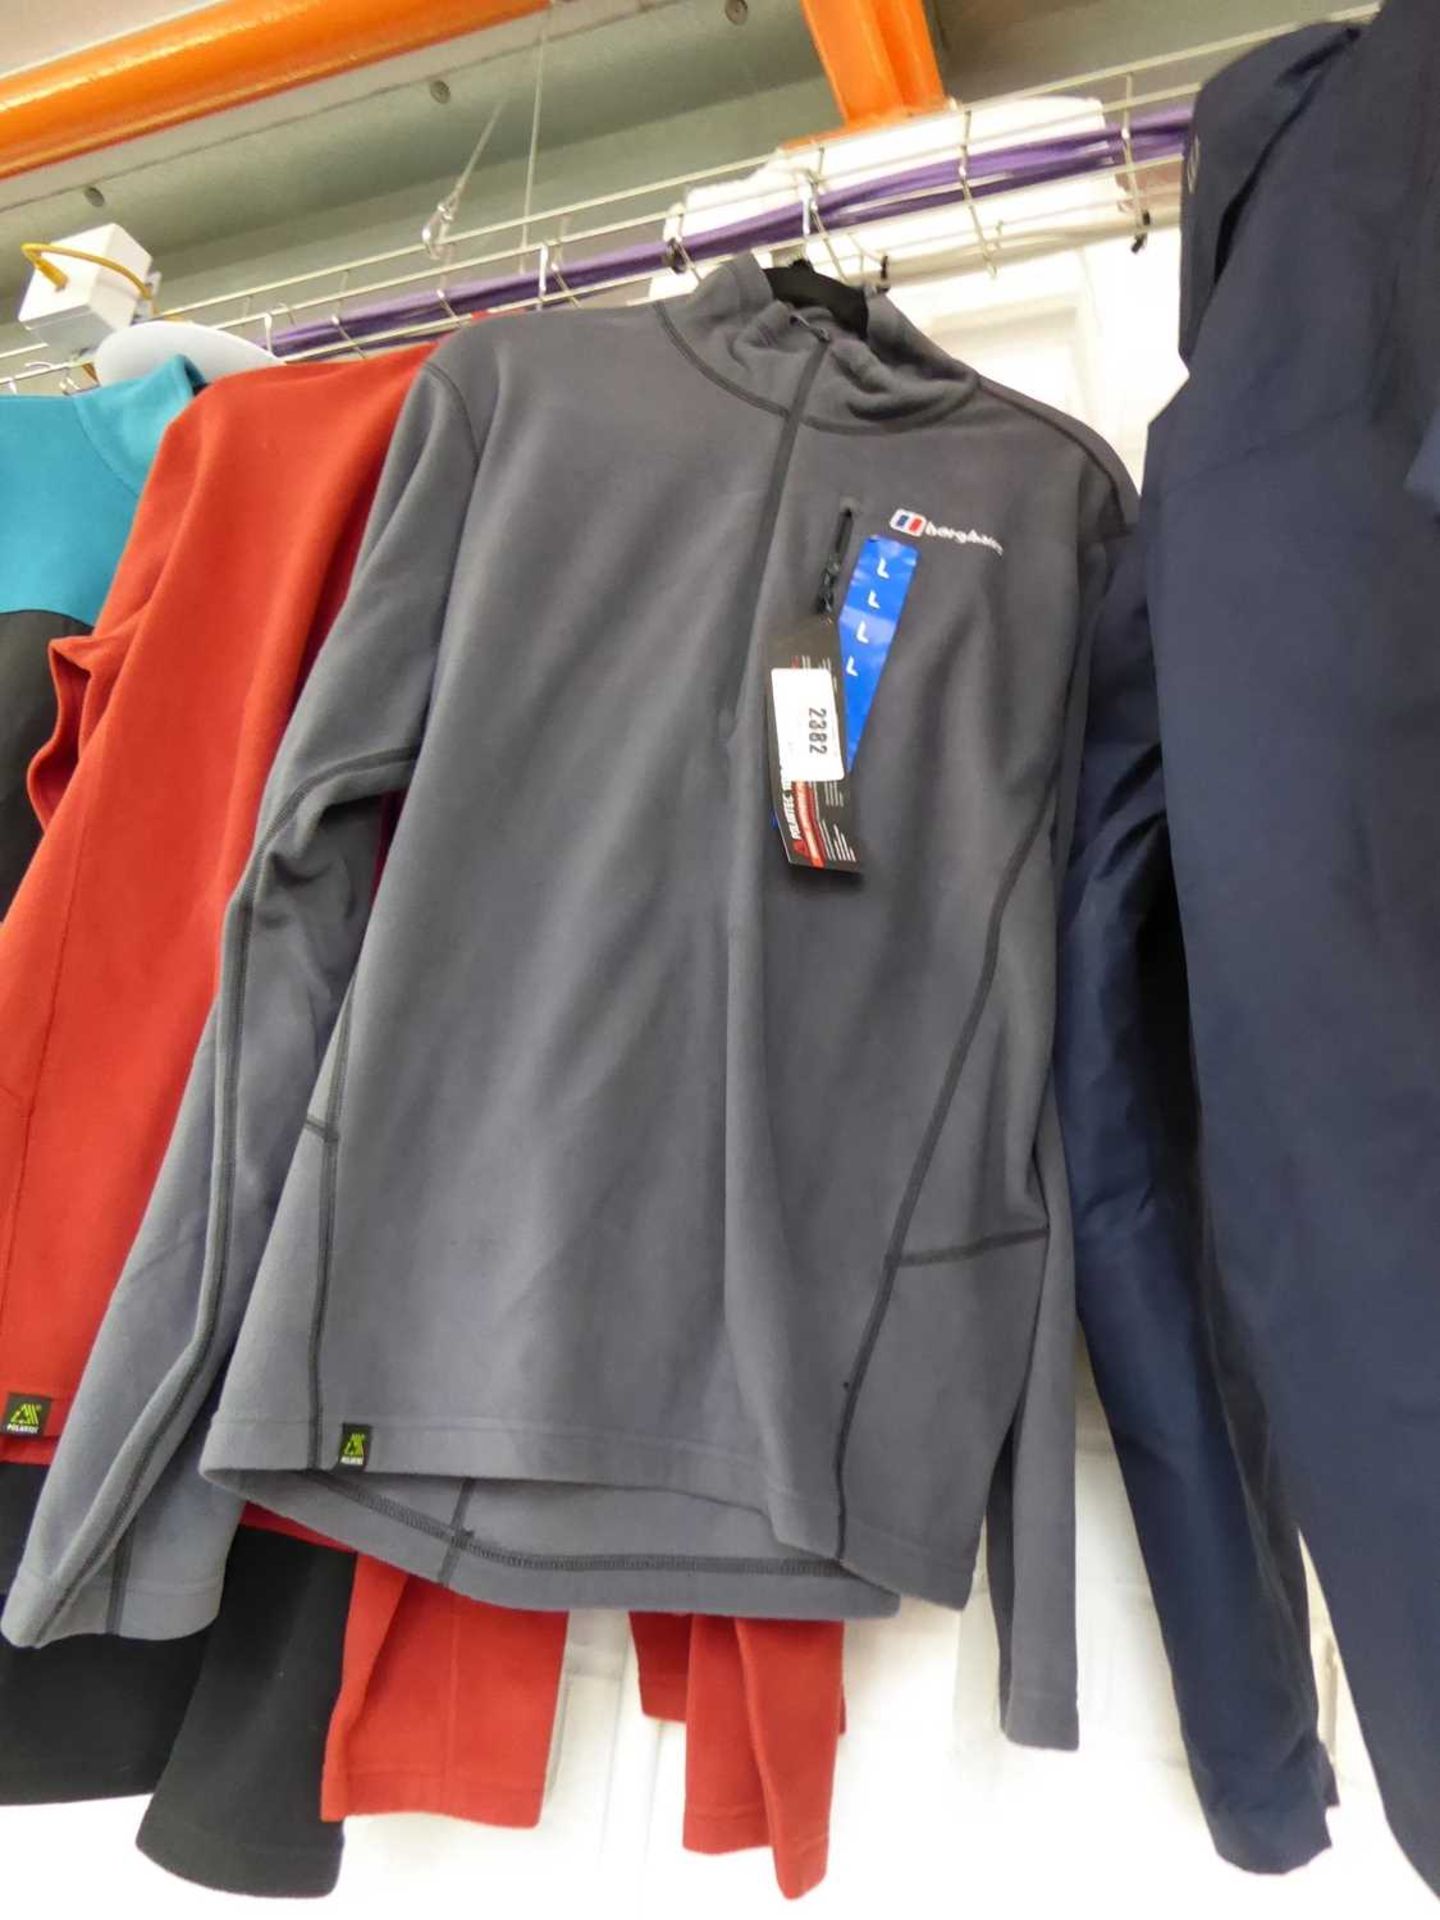 +VAT Berghaus half zip fleece in grey (size L), together with a Berghaus half zip fleece in red (